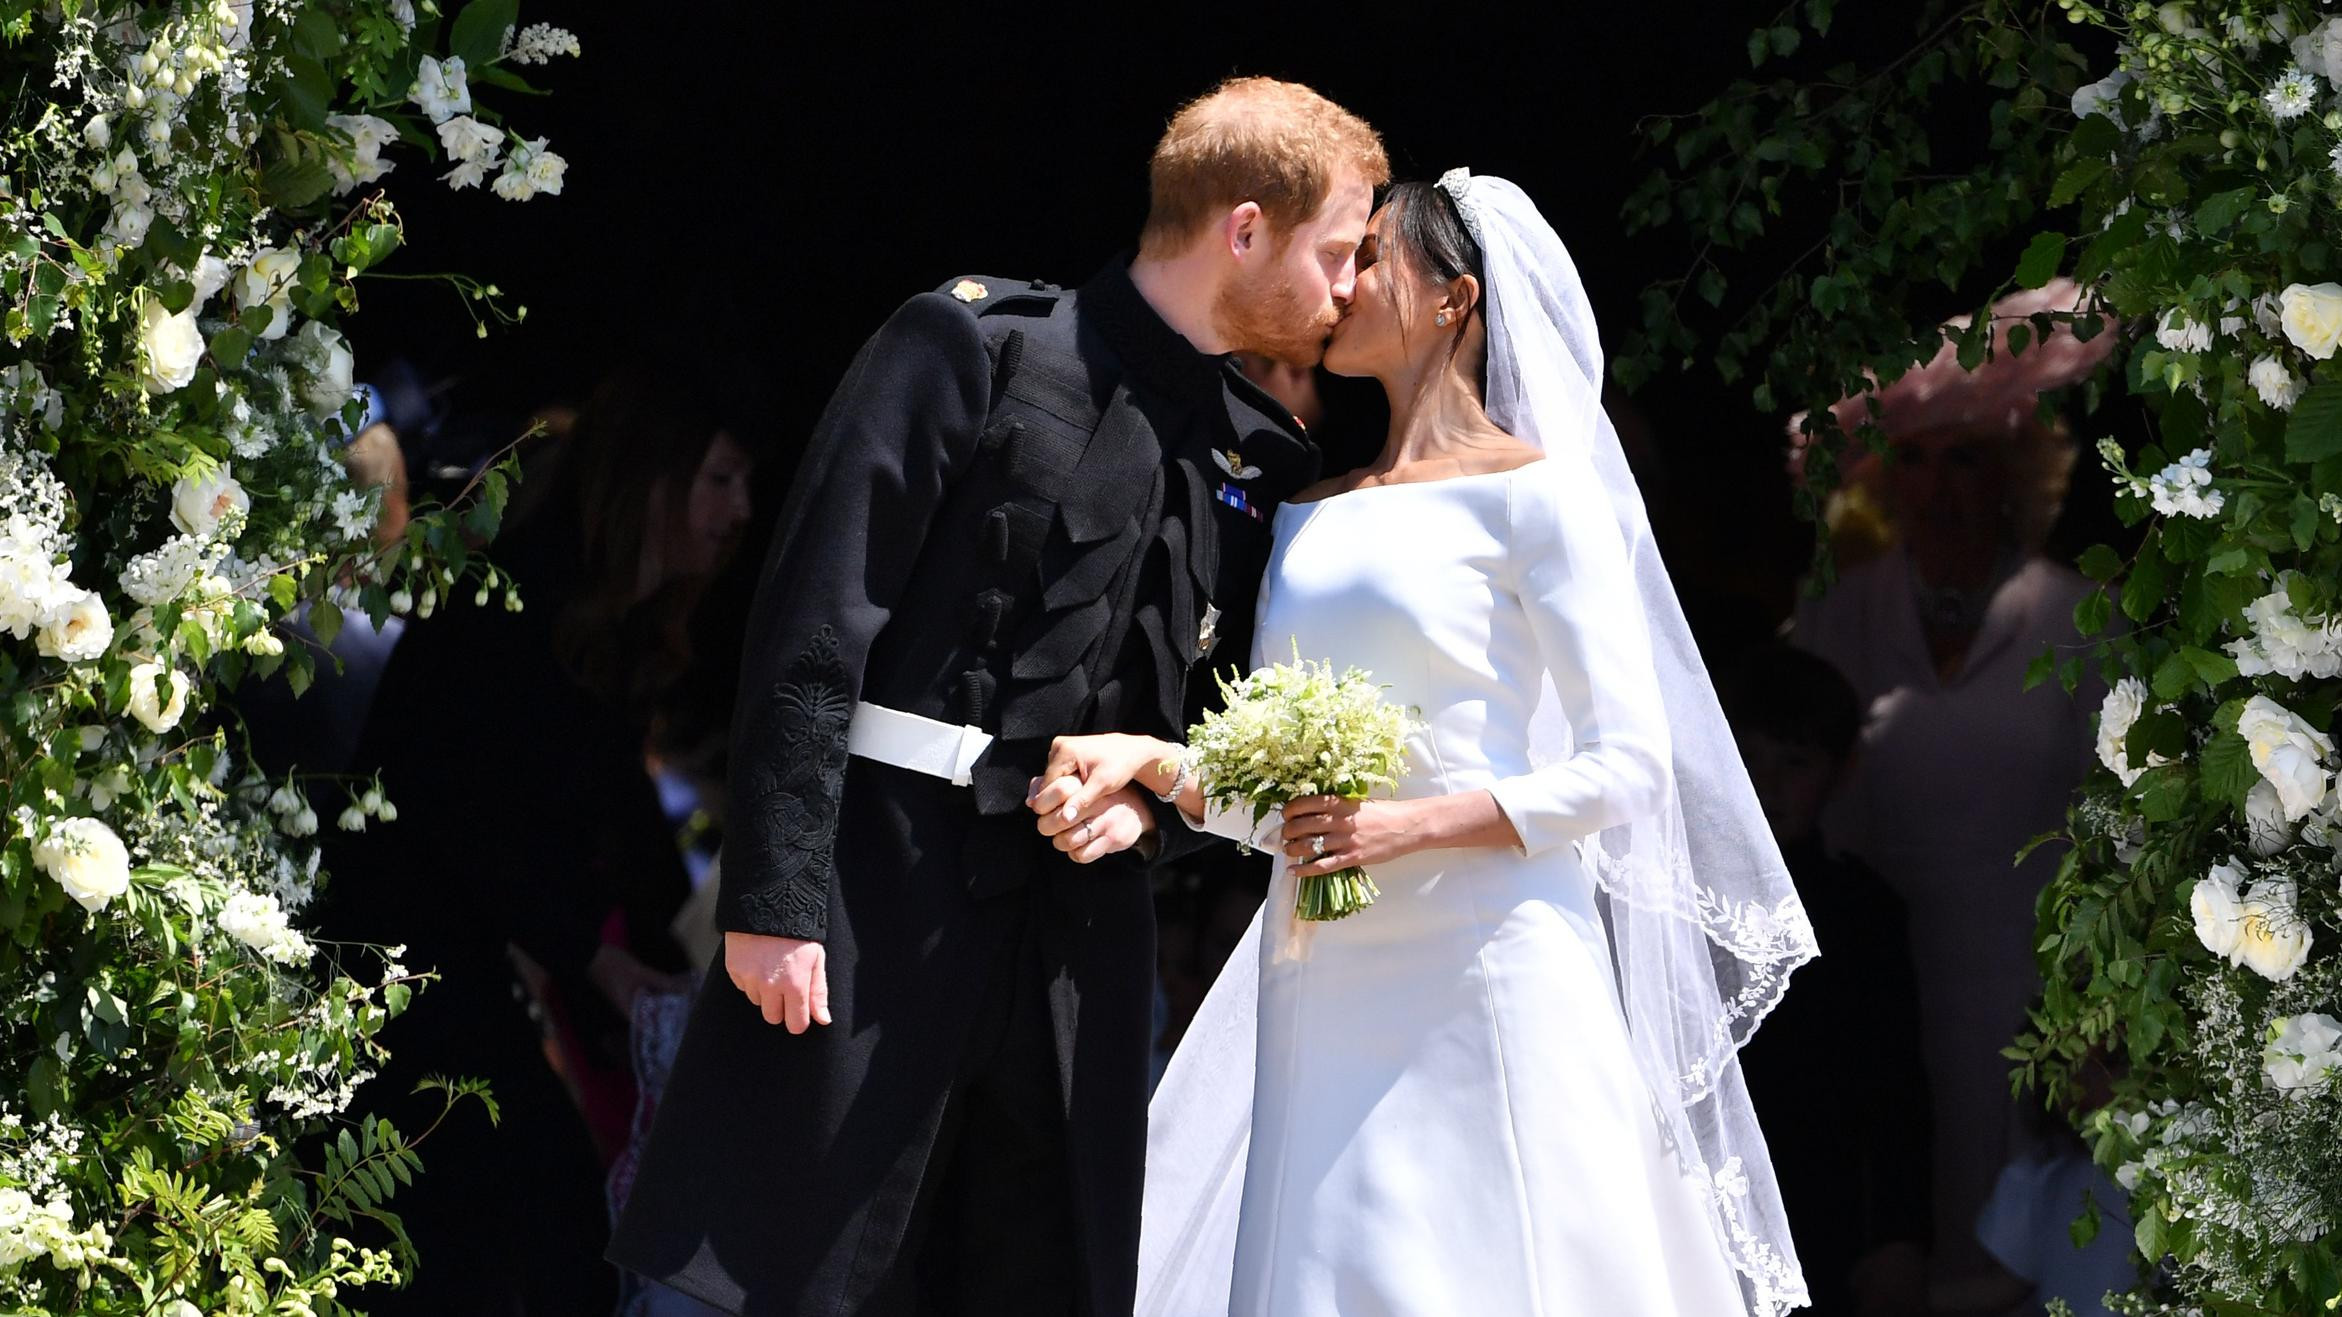 Royale Hochzeit 2019 Live
 Die royale Hochzeit von Prinz Harry und Meghan Markle im